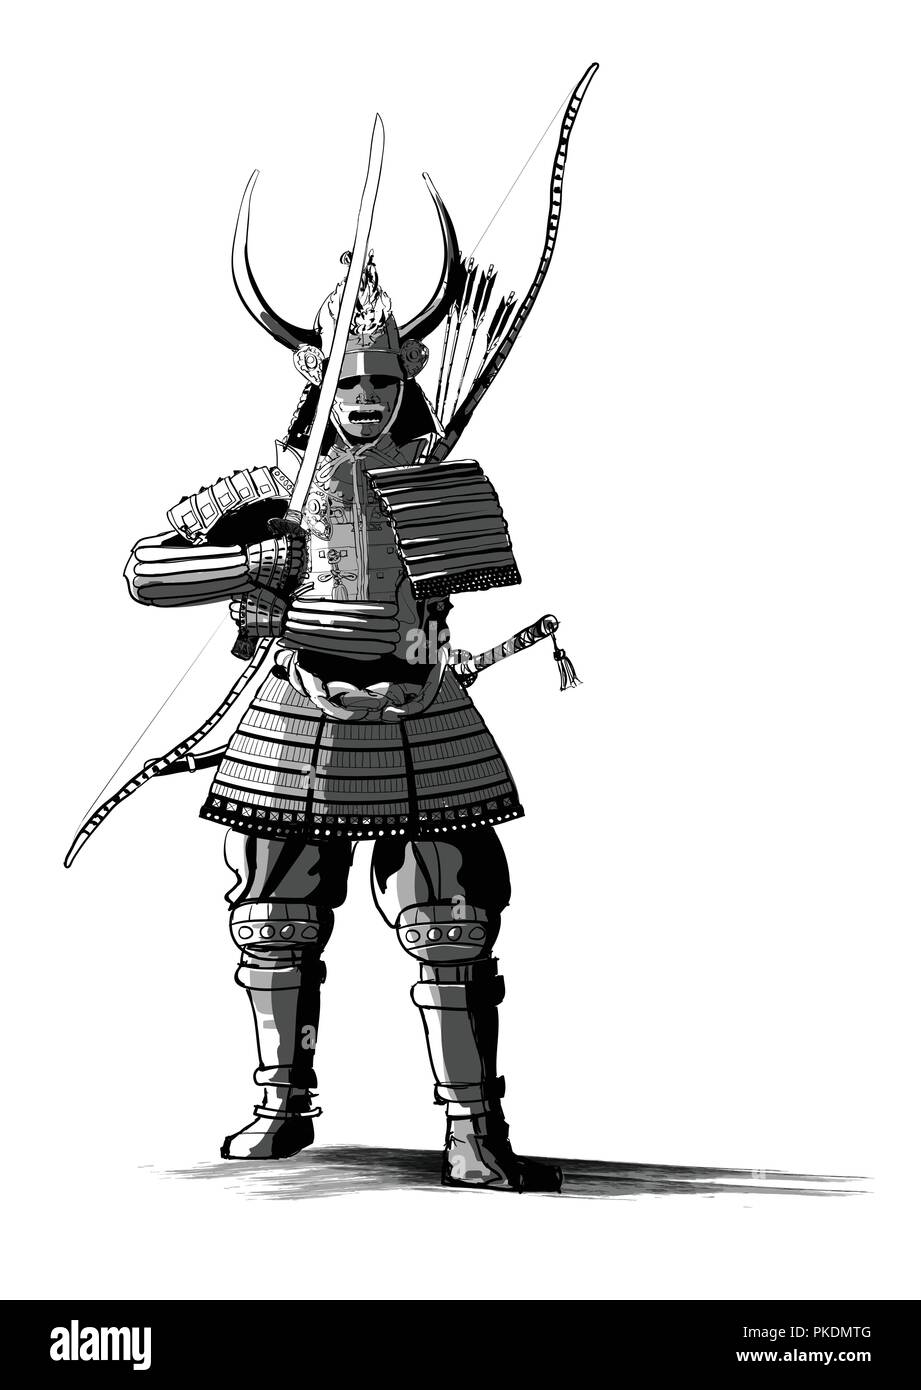 Japanische samourai mit Schwert und Bogen-Vector Illustration  Stock-Vektorgrafik - Alamy